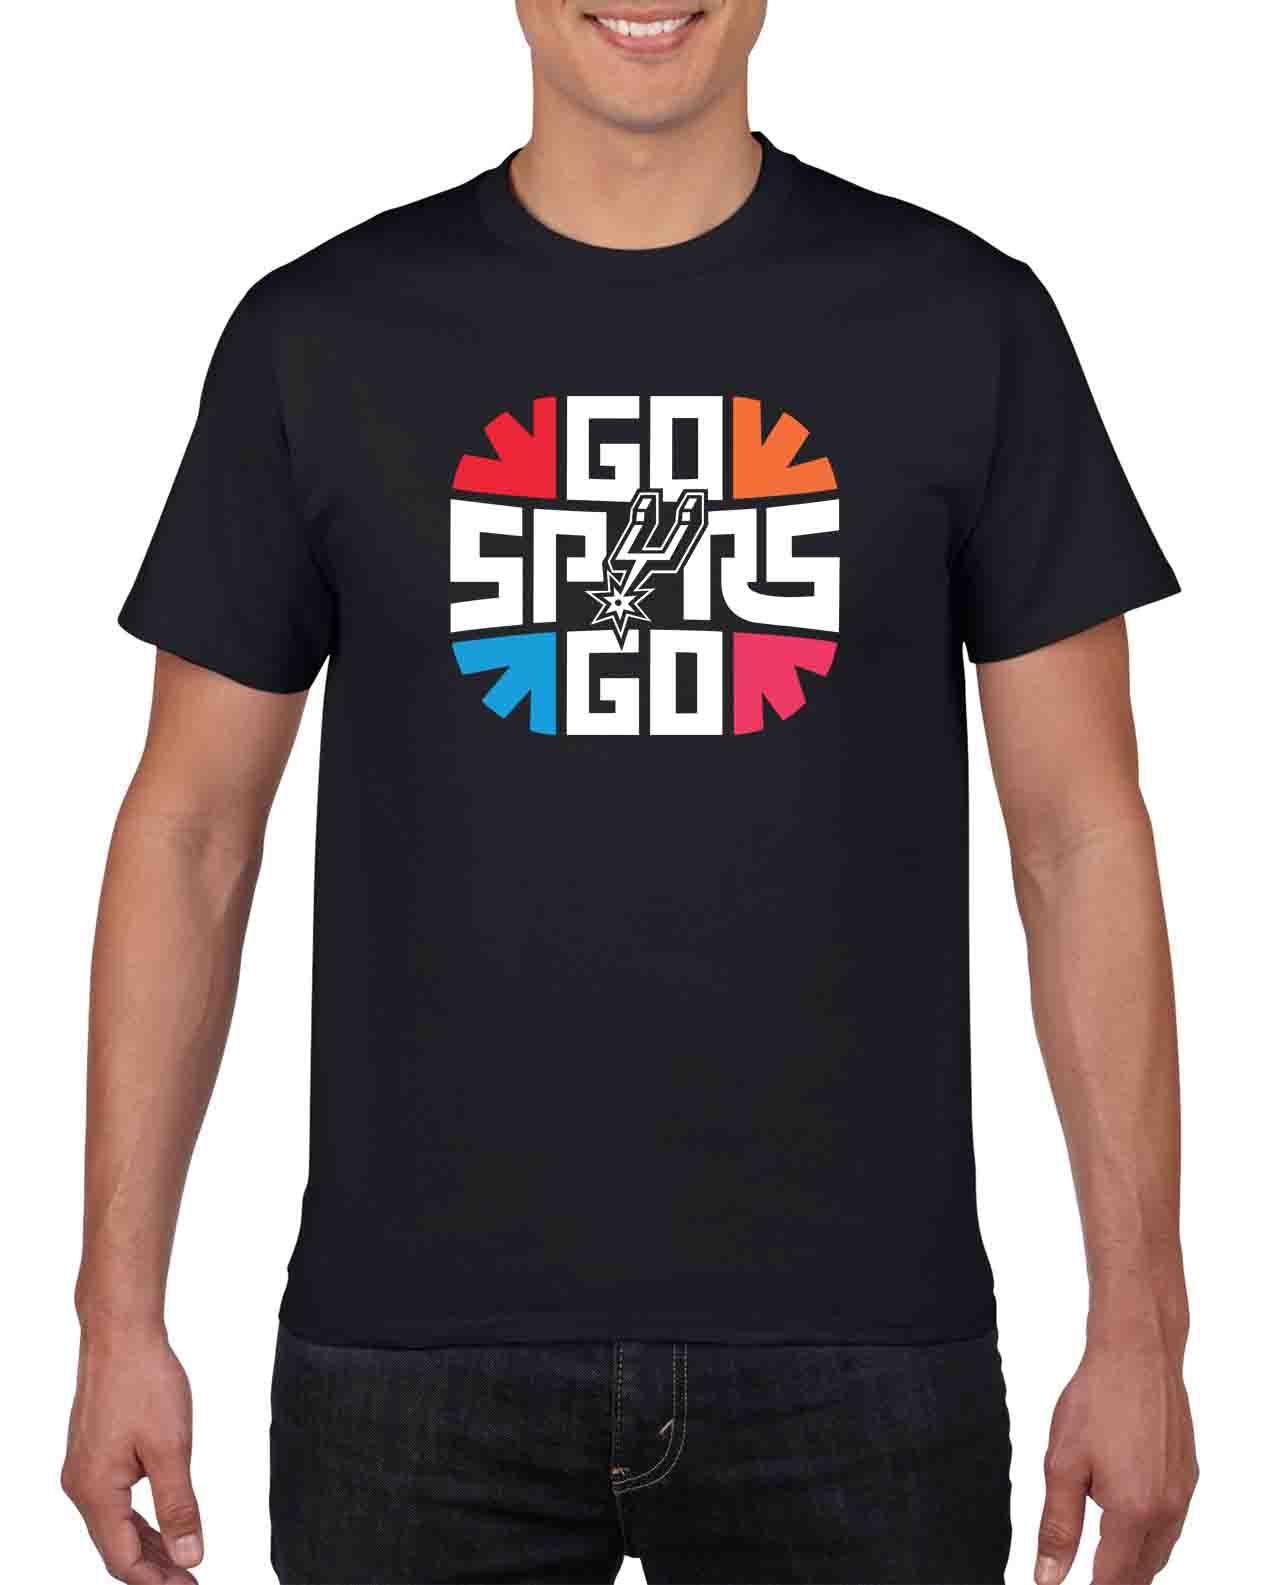 go spurs go shirt